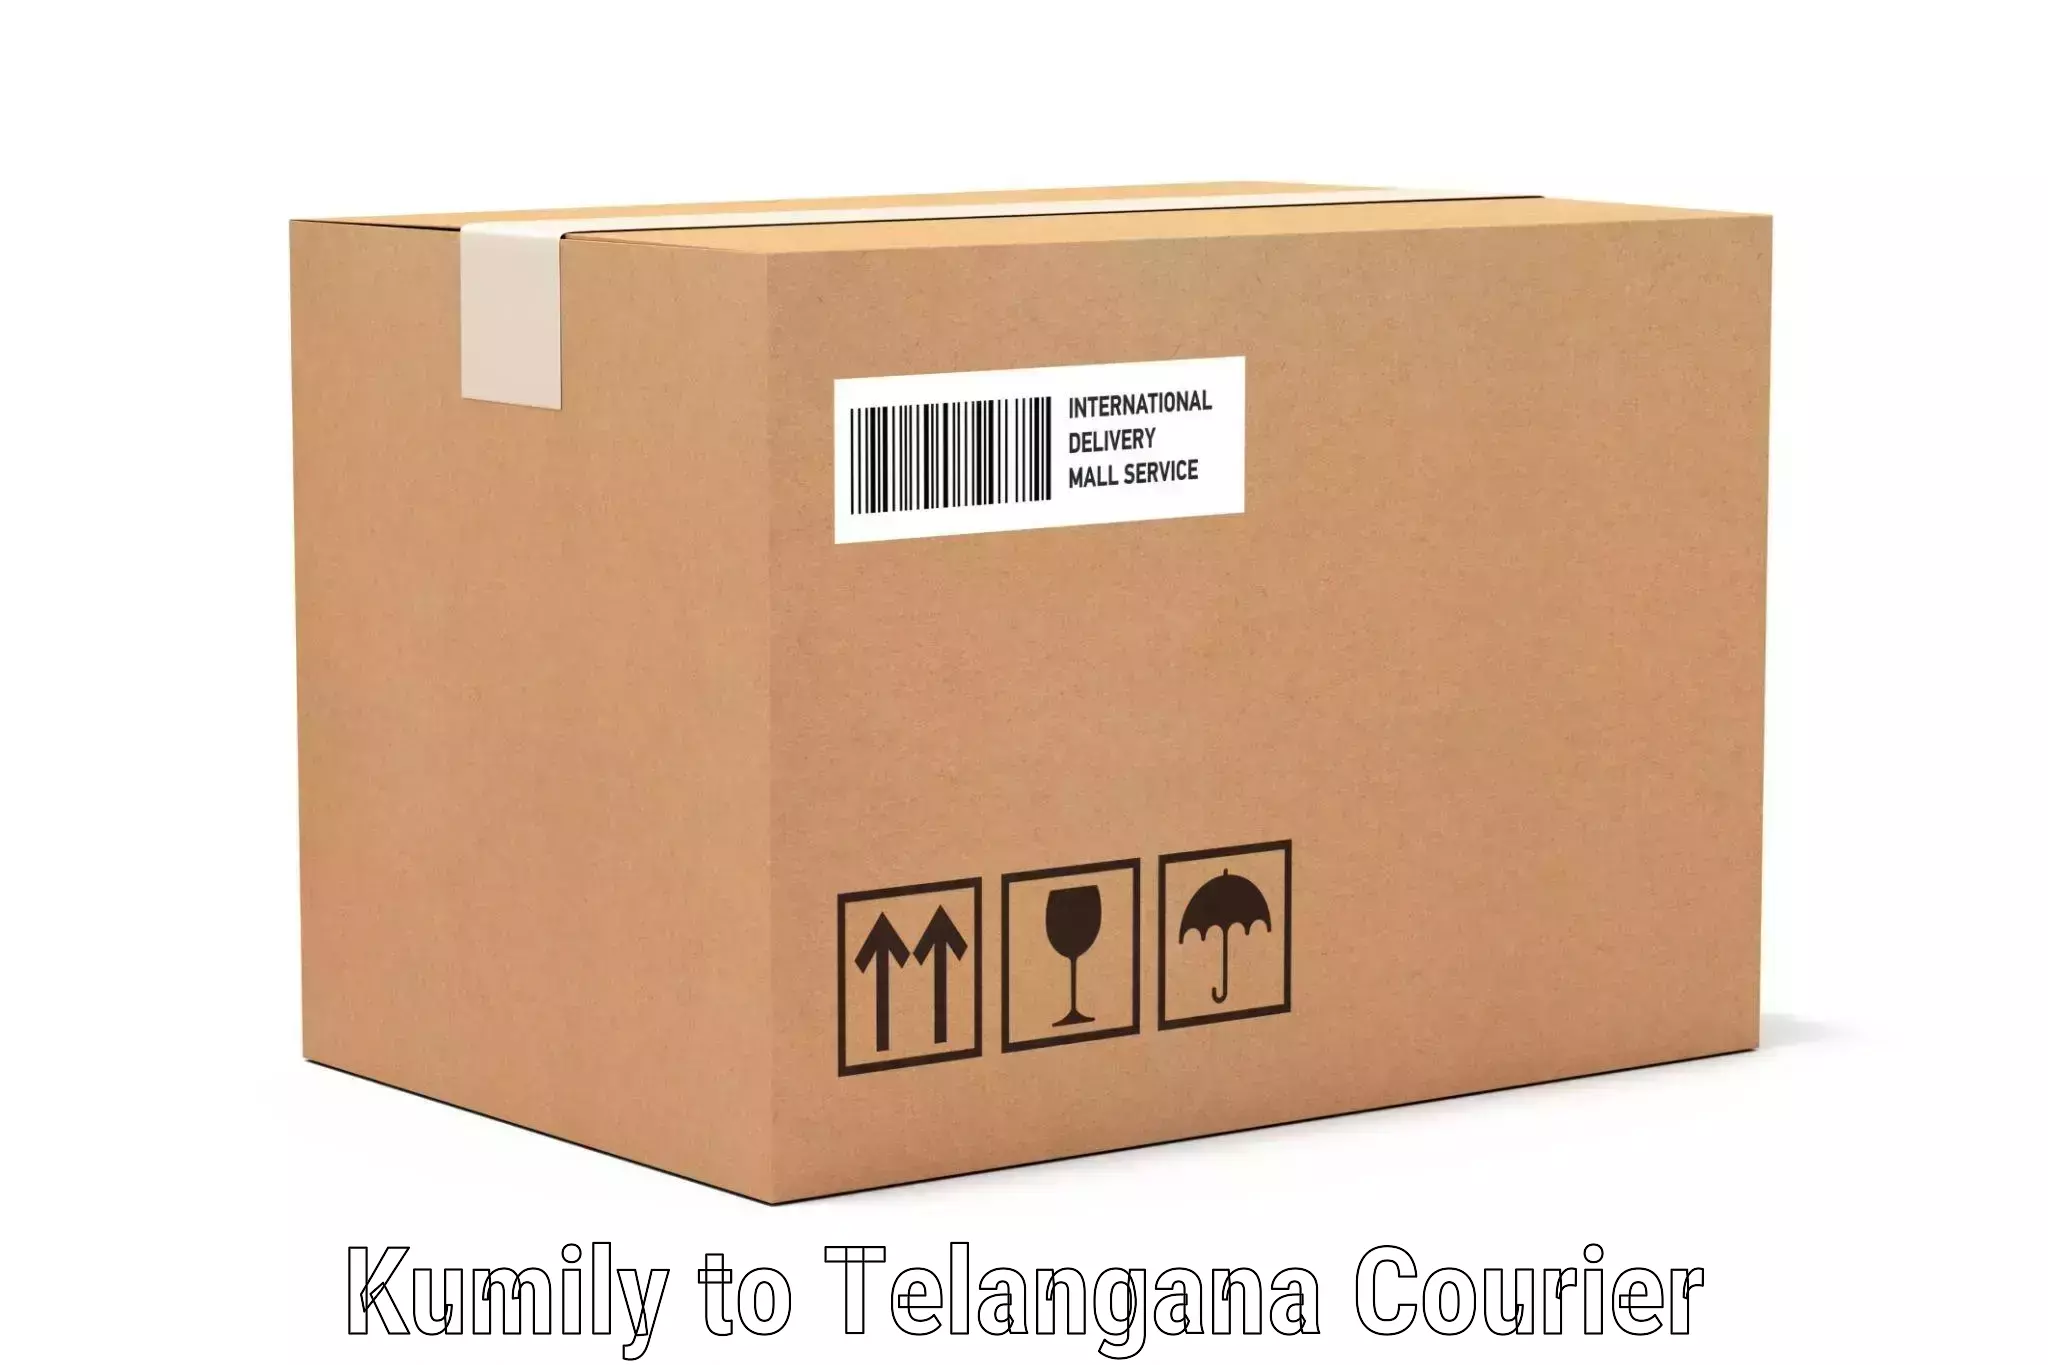 Luggage shipment strategy Kumily to Jainoor